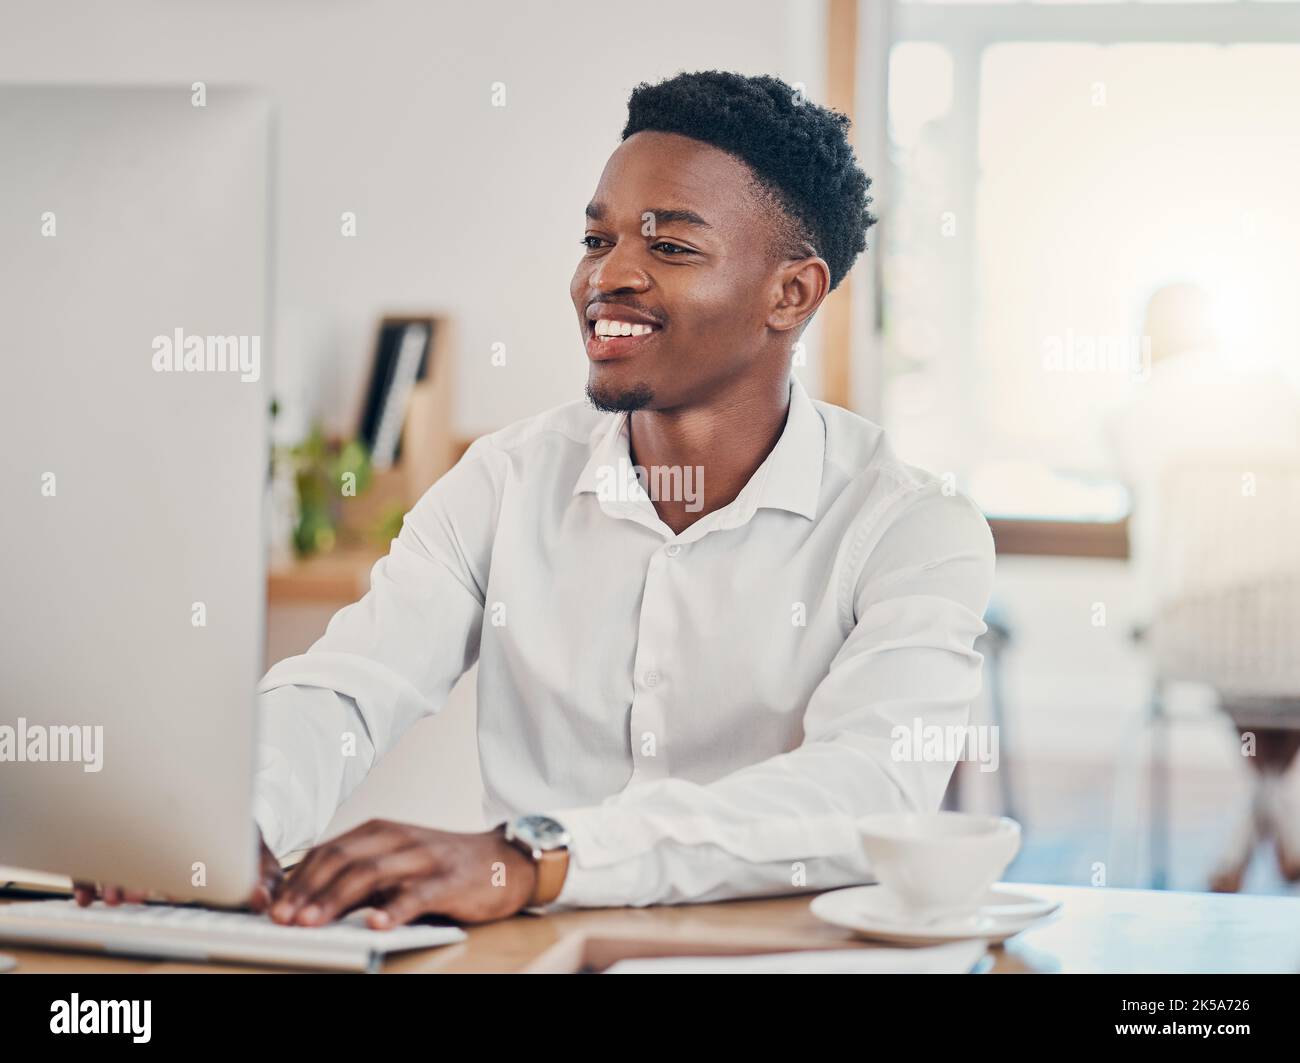 Ordinateur, dactylographie et homme noir travaillant au bureau, faisant des recherches et écrivant des e-mails. Technologie, travail et homme d'affaires avec le sourire Banque D'Images